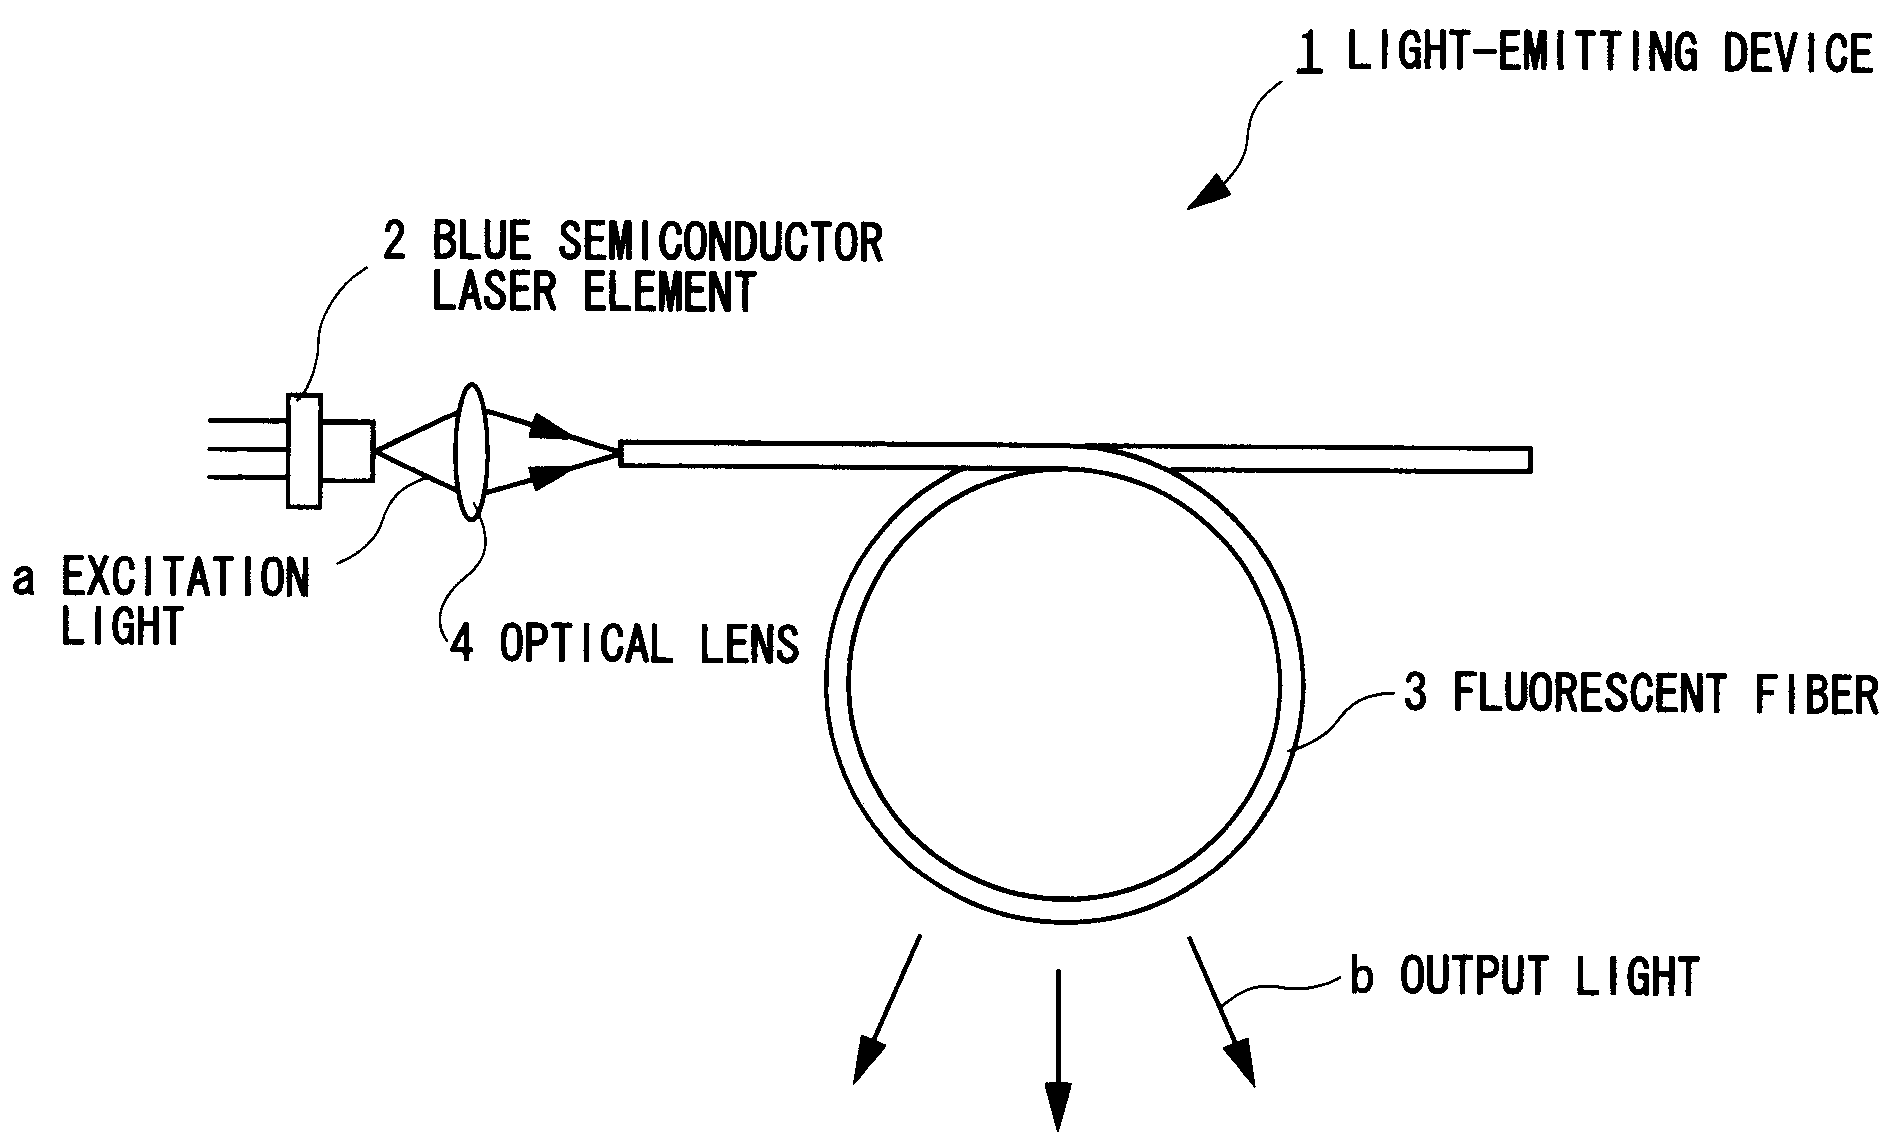 White light-emitting device using fluorescent fiber